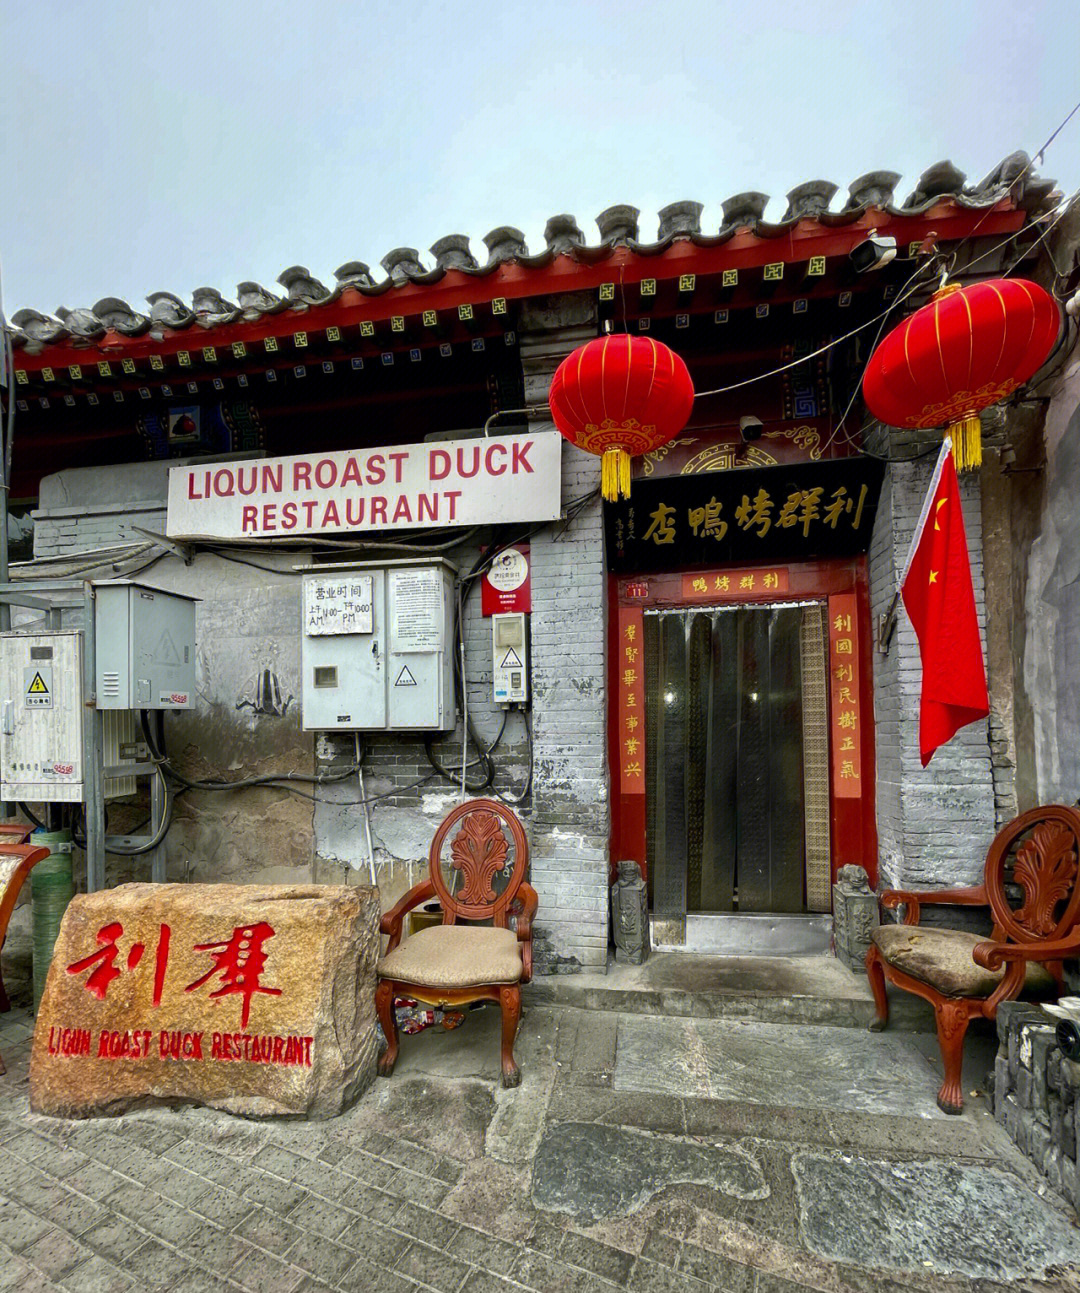 北京美食打卡利群烤鸭在胡同里吃烤鸭